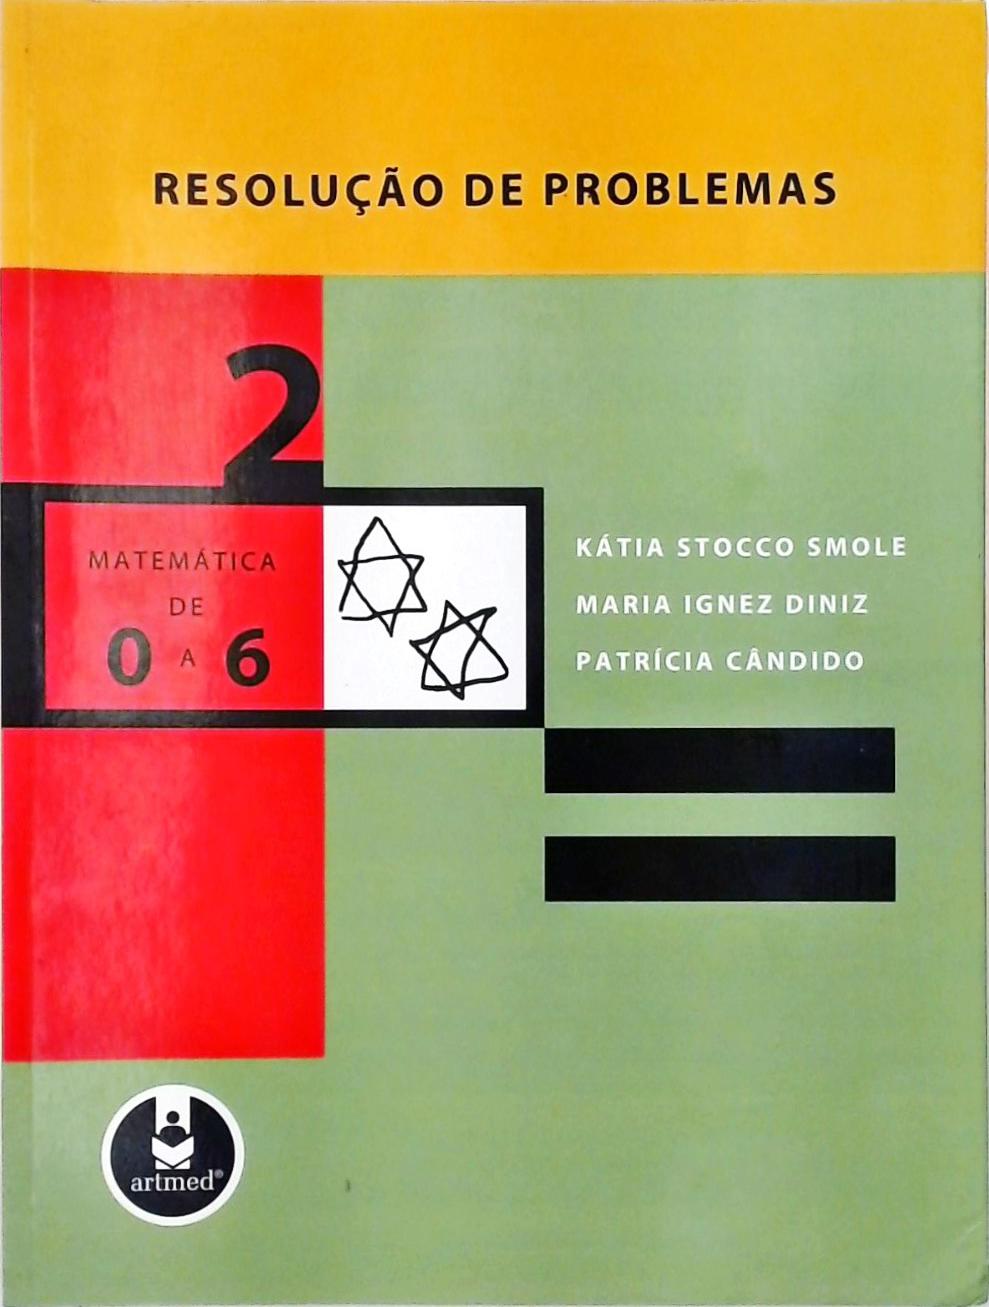 Matemática de 0 a 6 Vol. 2 - Resolução de Problemas